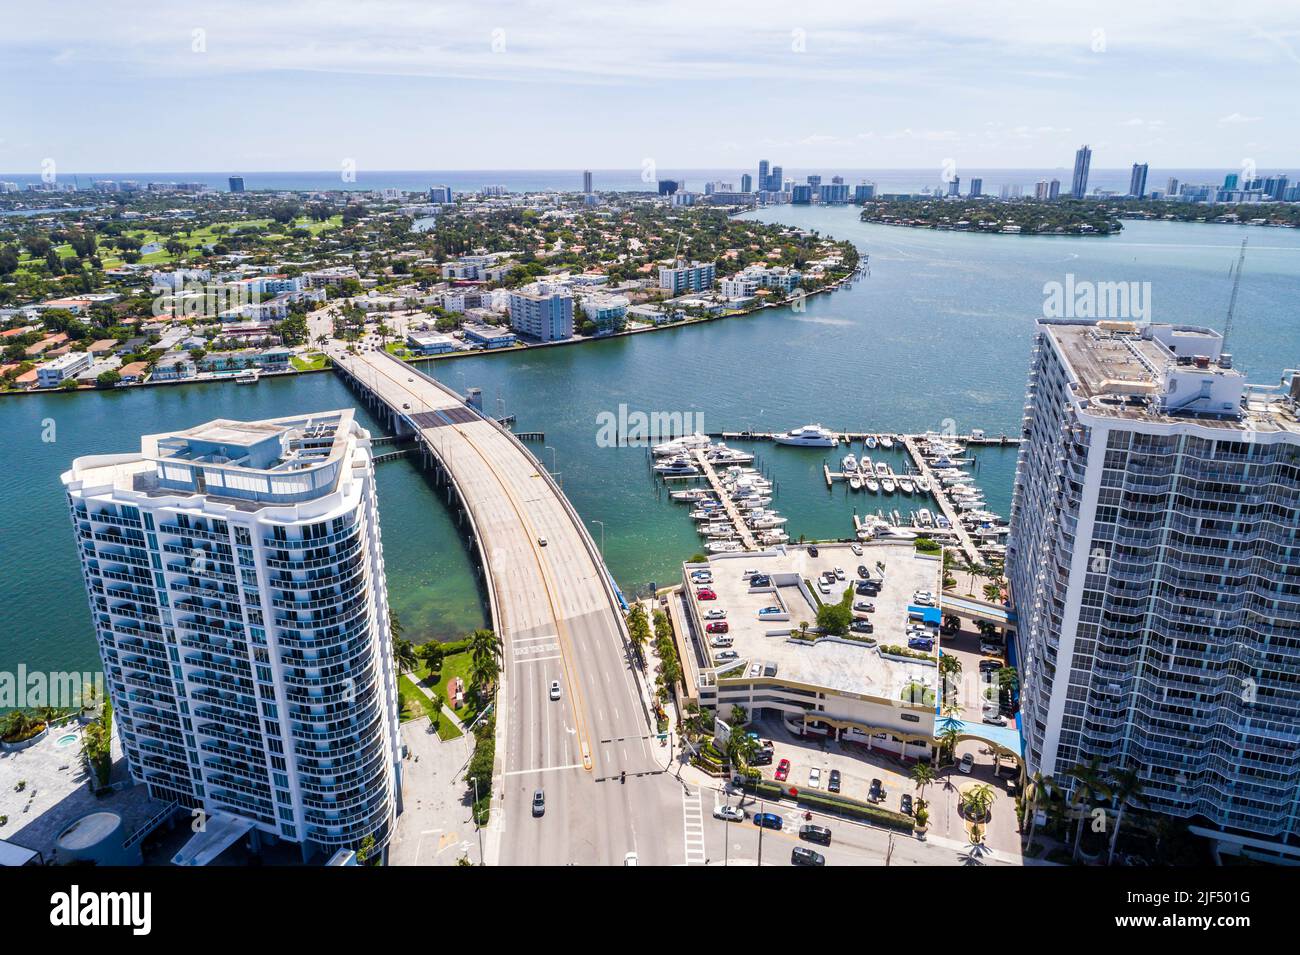 North Bay Village Florida, Miami Biscayne Bay, vista aérea desde arriba, 79th Street John F Kennedy puente Causeway Grandview Palace Condominio M Foto de stock